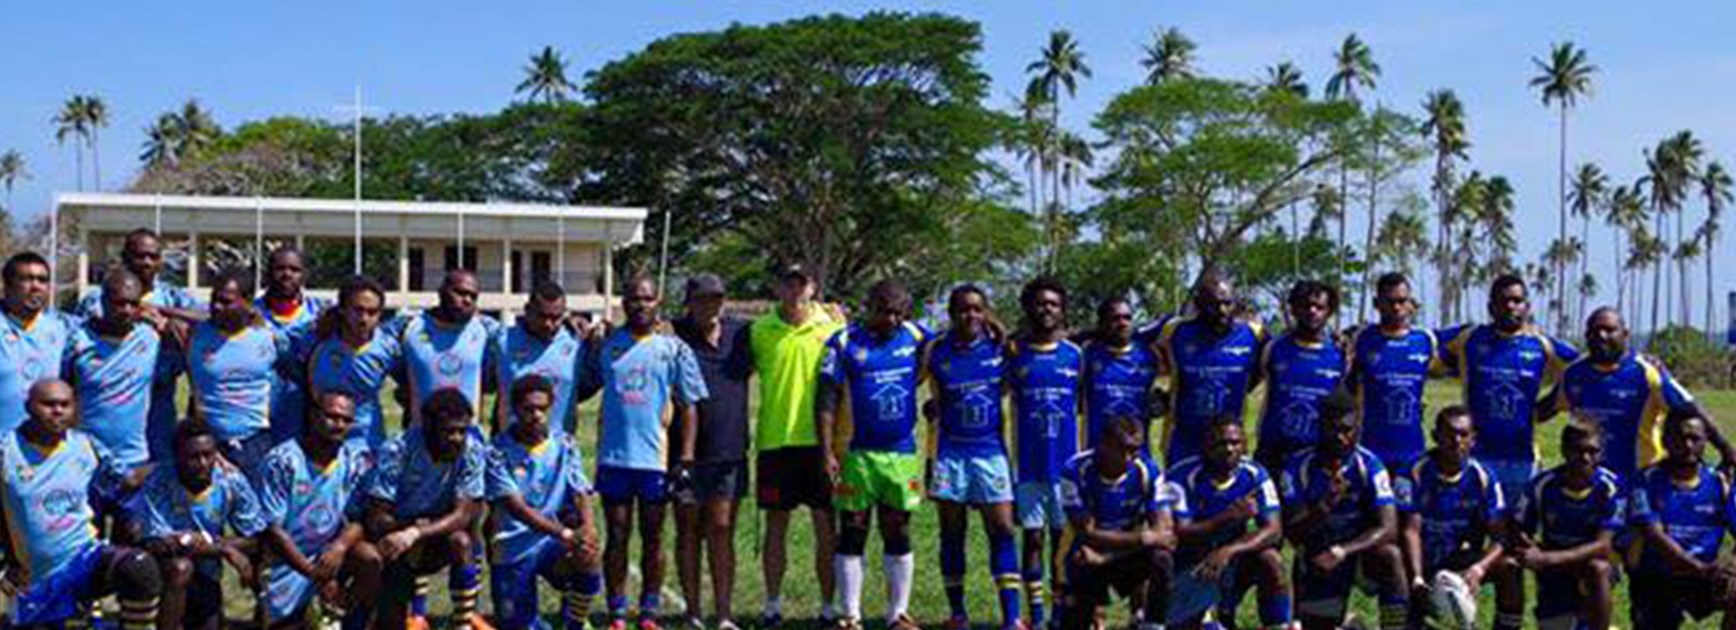 Rugby League in Vanuatu will be stronger despite a setback.